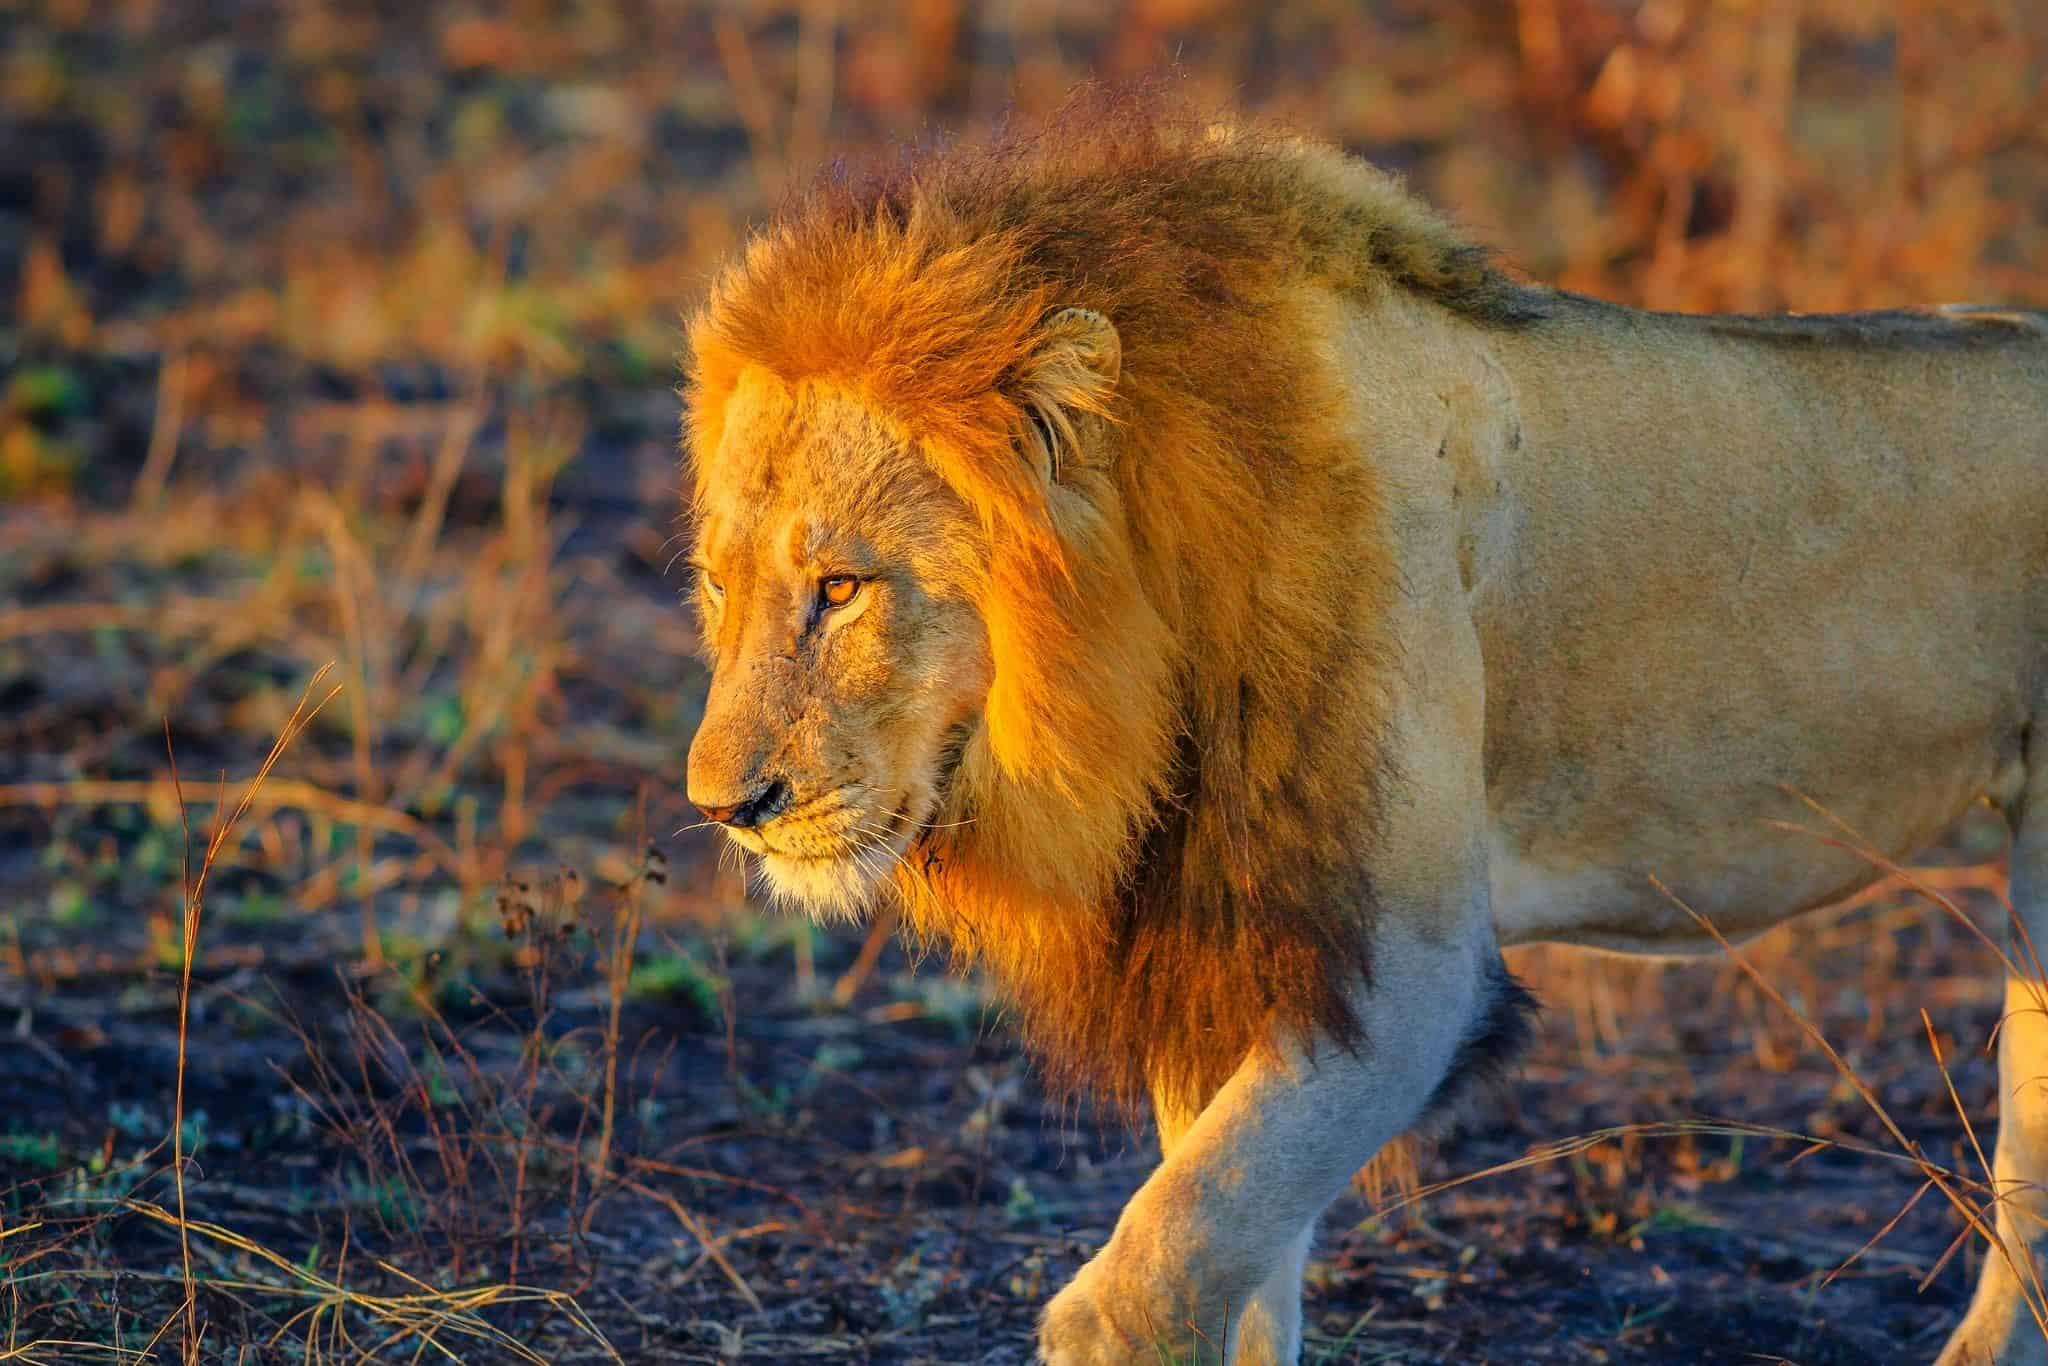 South Africa Lion in Kruger National Park